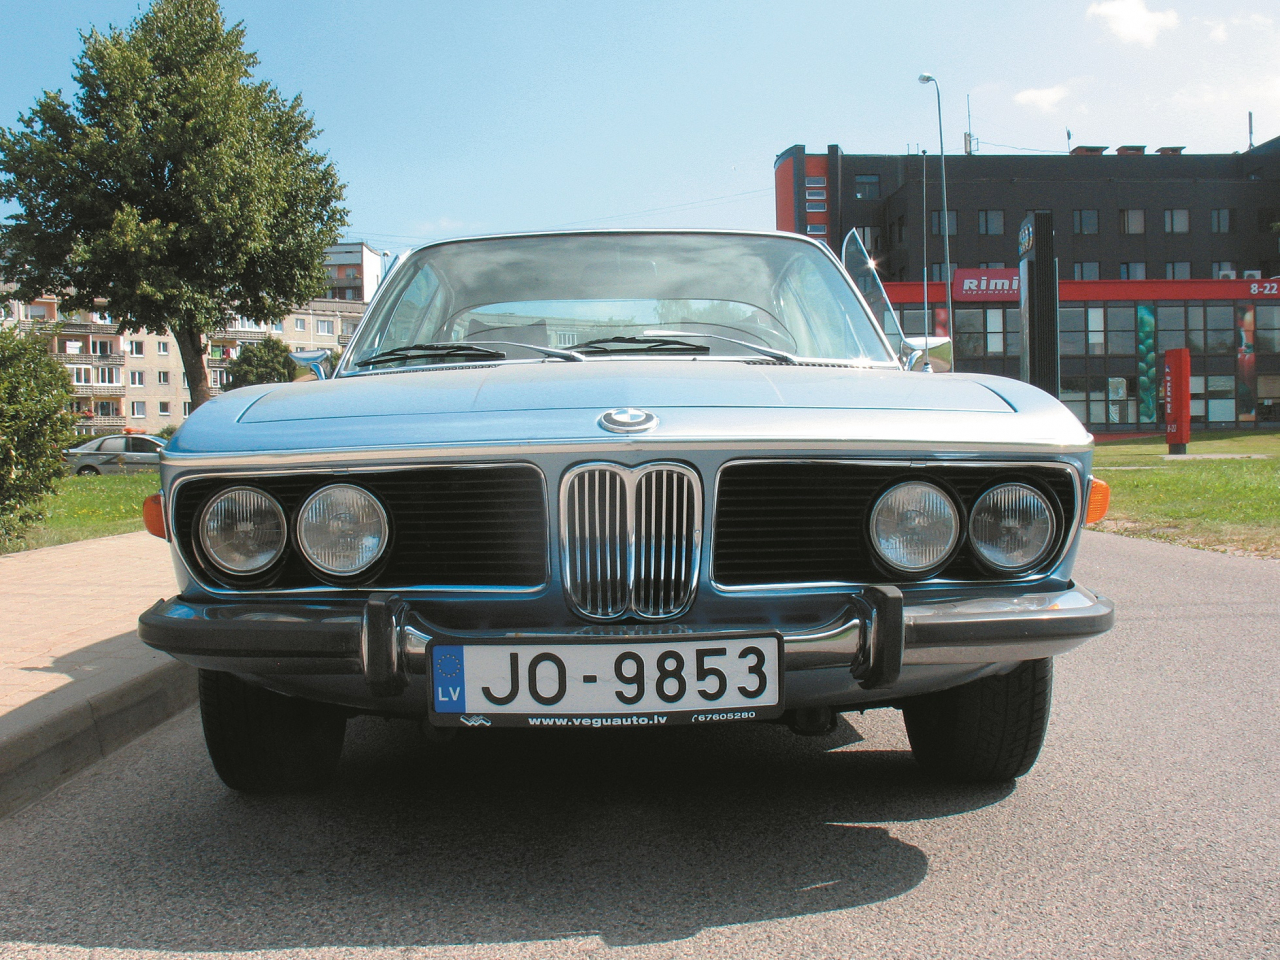  Viens no pirmajiem BMW, kas aprīkots ar četru lukturu apgaismes sistēmu